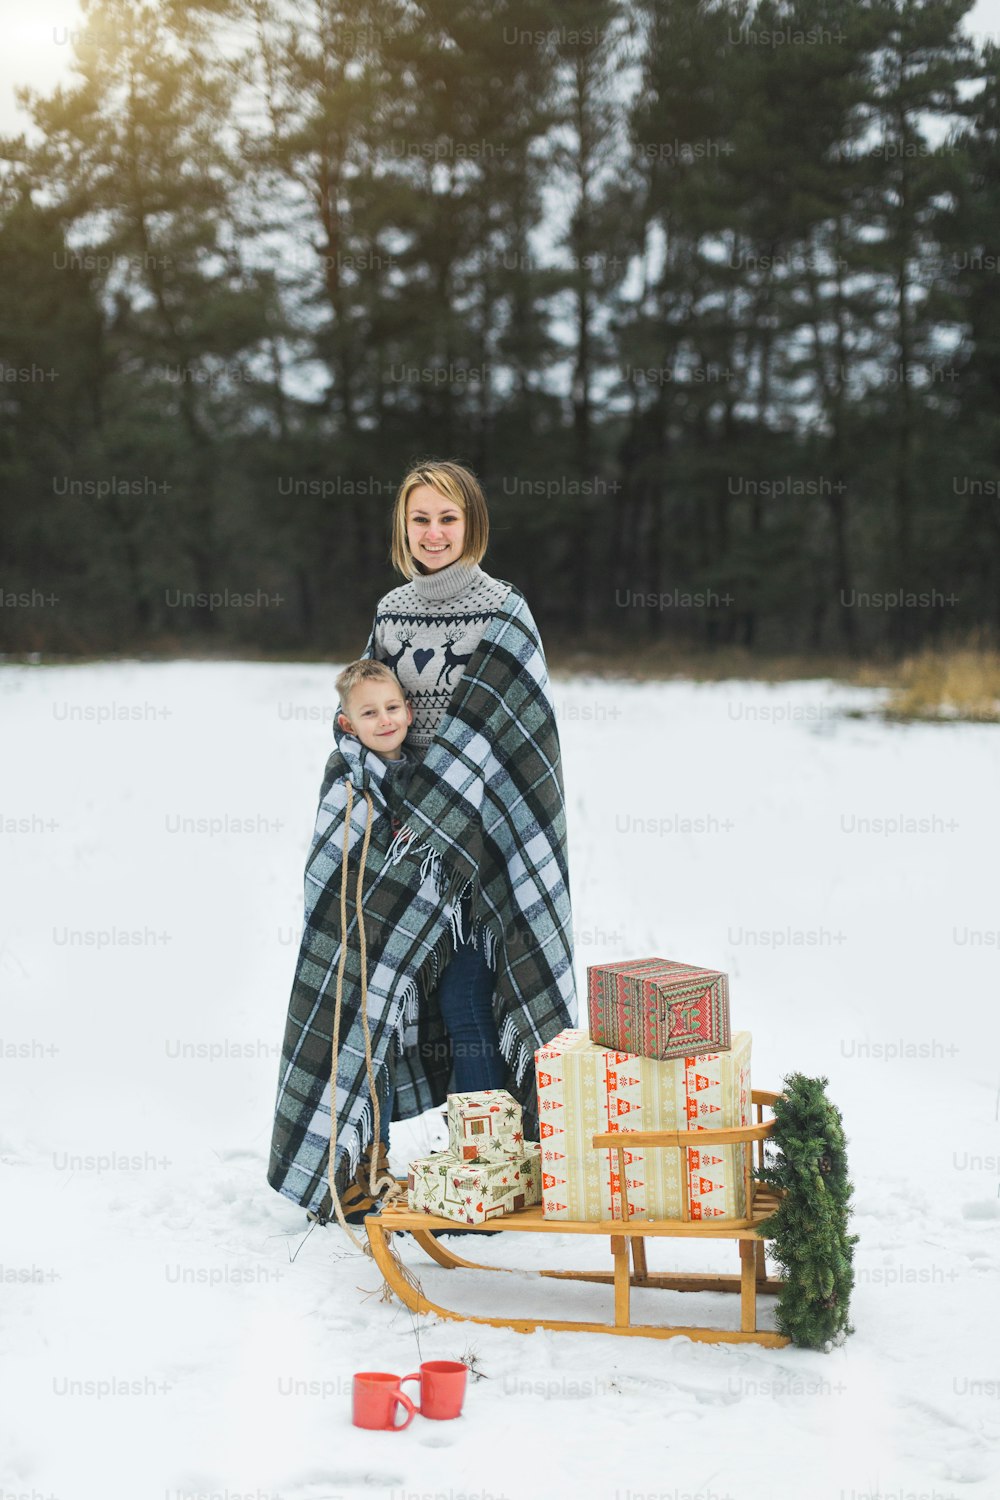 Bonita madre joven con su hijo cubierto con cuadros a cuadros, de pie sobre el fondo del bosque de invierno, tirando de un trineo de madera decorado con corona de Navidad y regalos de regalo en él.